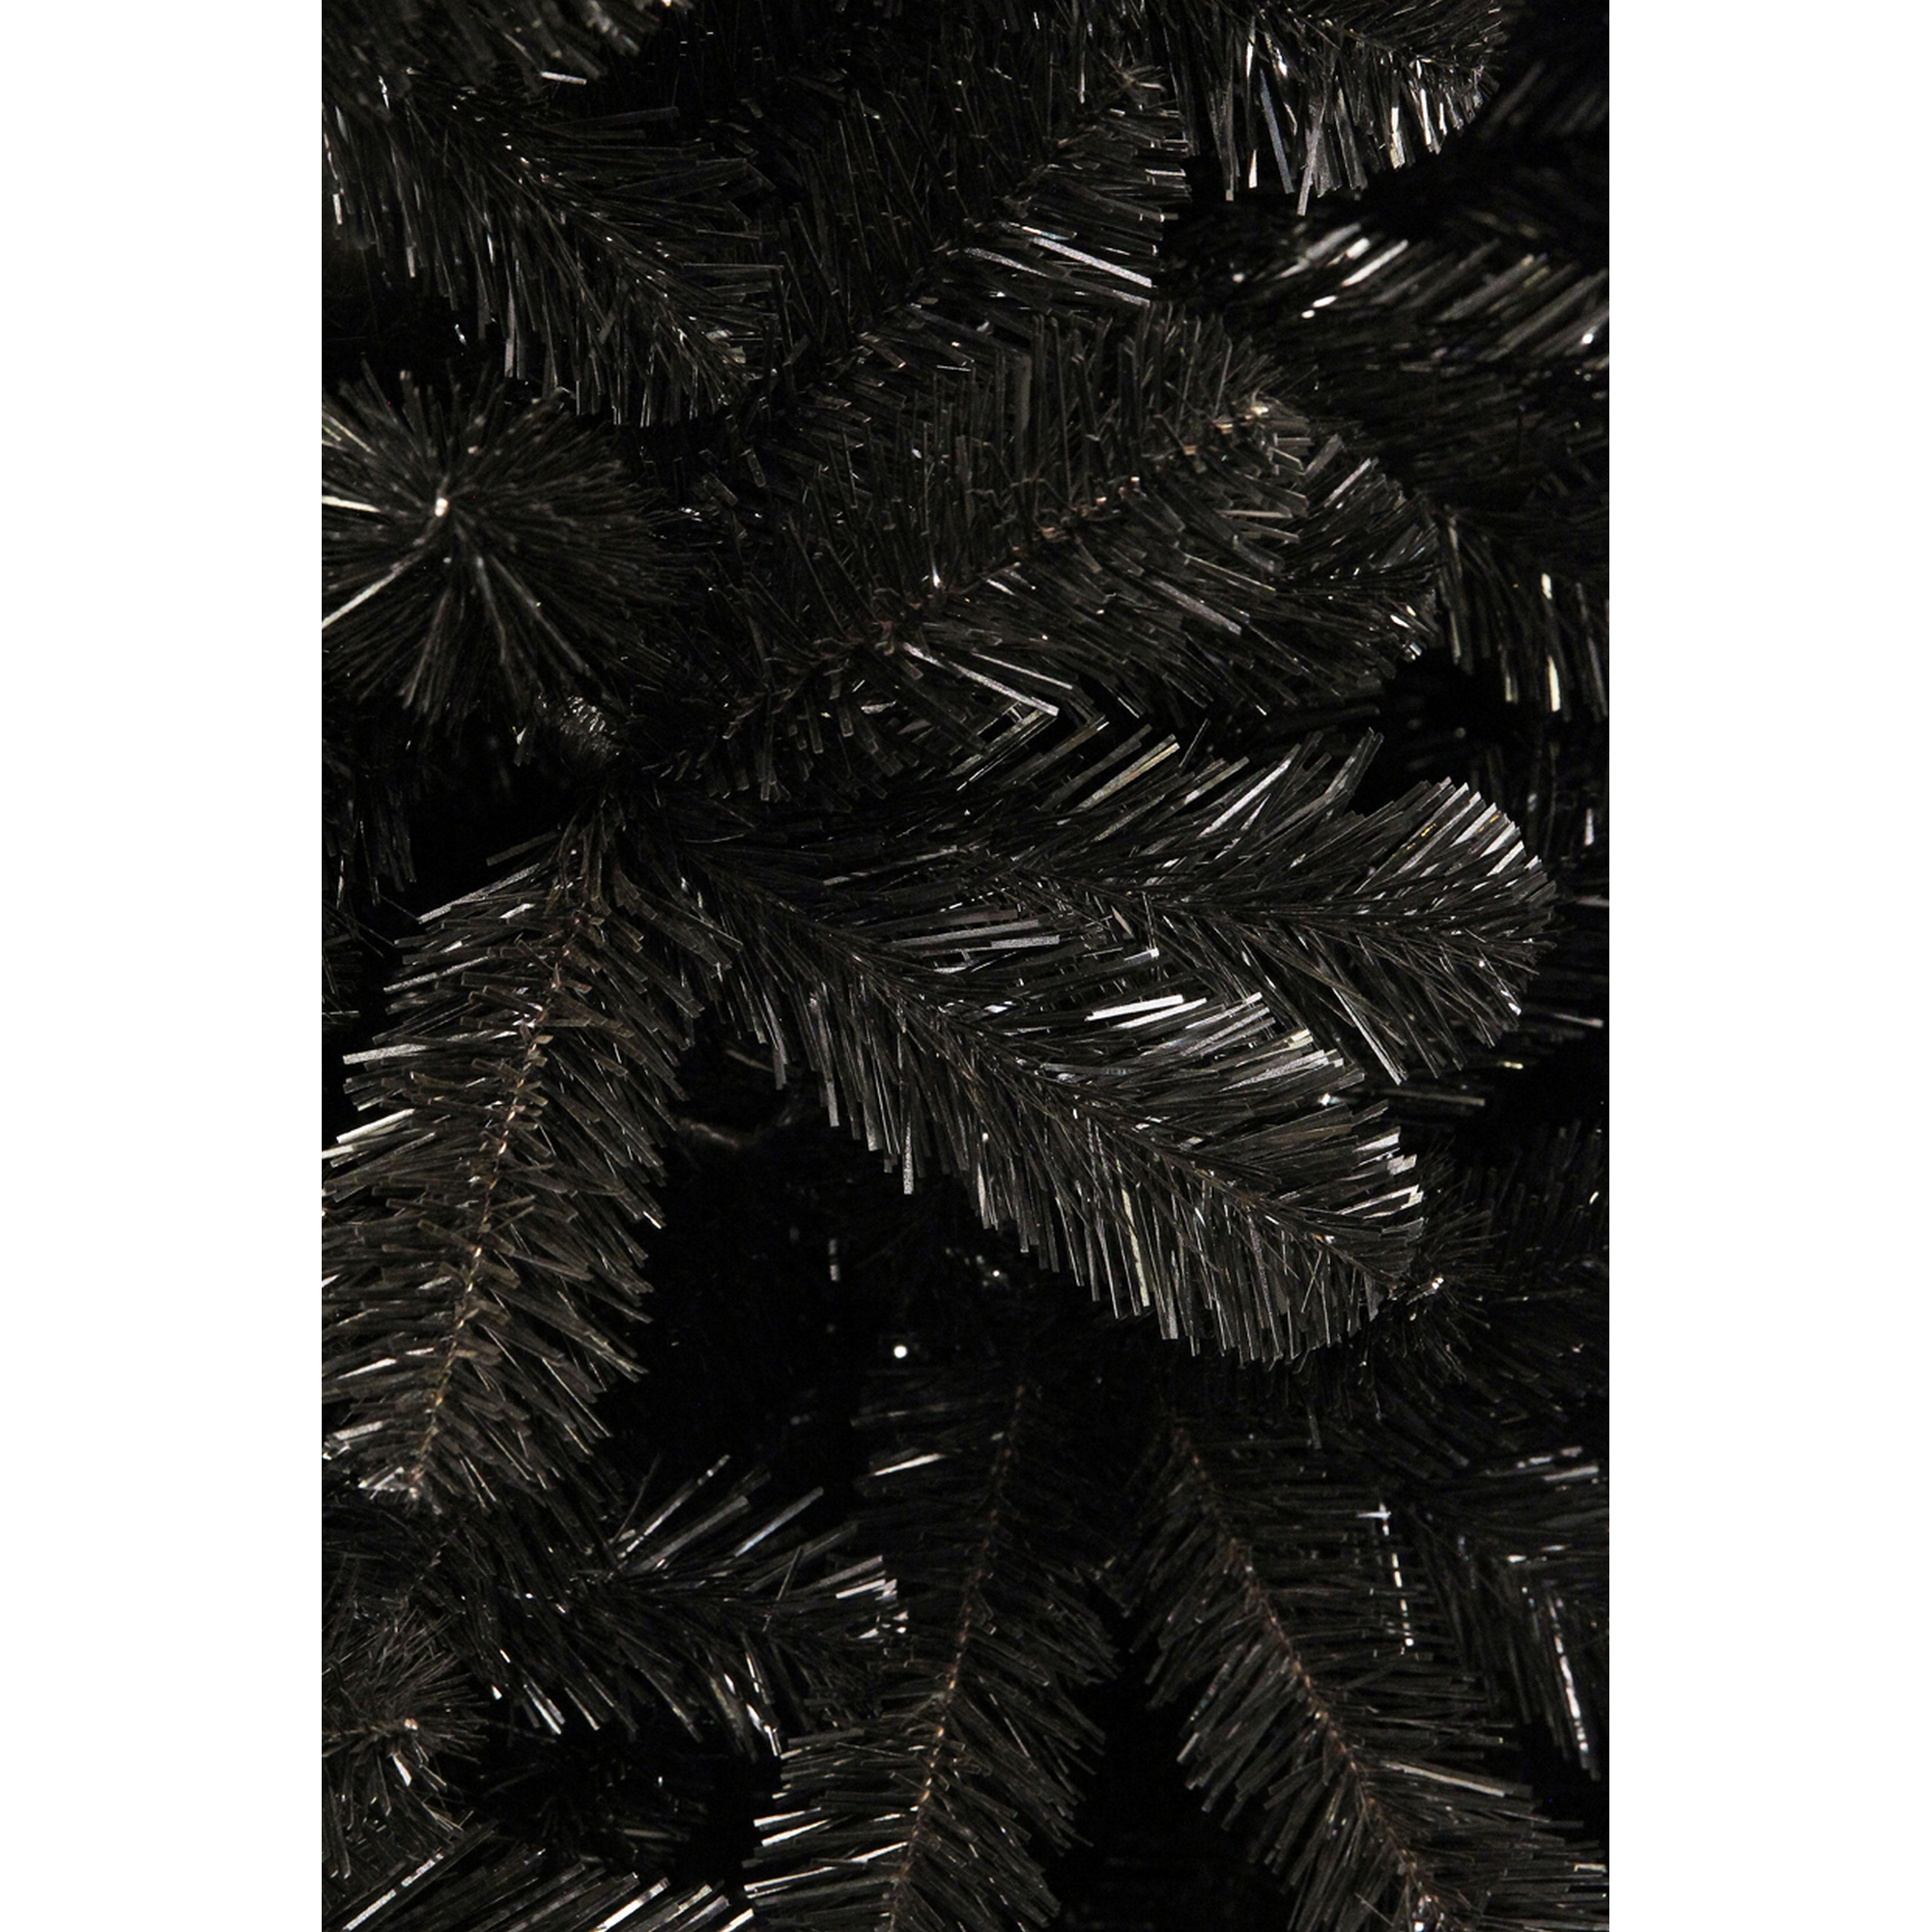 Künstlicher Weihnachtsbaum 'Tuscan' schwarz 185 cm + product picture